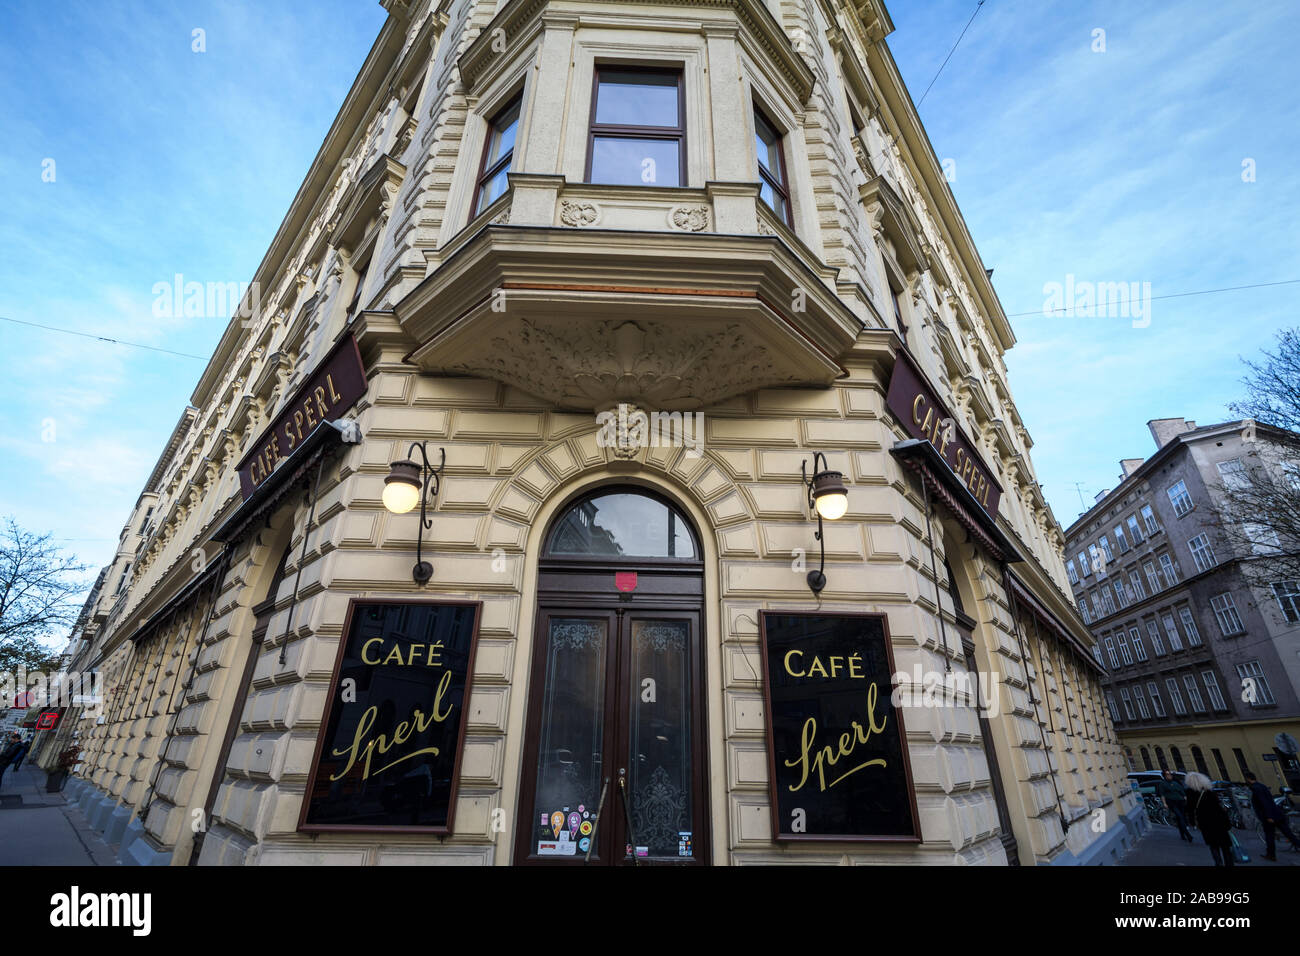 VIENNA, Austria - 6 Novembre 2019: ingresso al Cafe Sperl, un tipico ingresso barocco di Wiener Kaffeehaus, caffetteria Viennese, un'icona di t Foto Stock